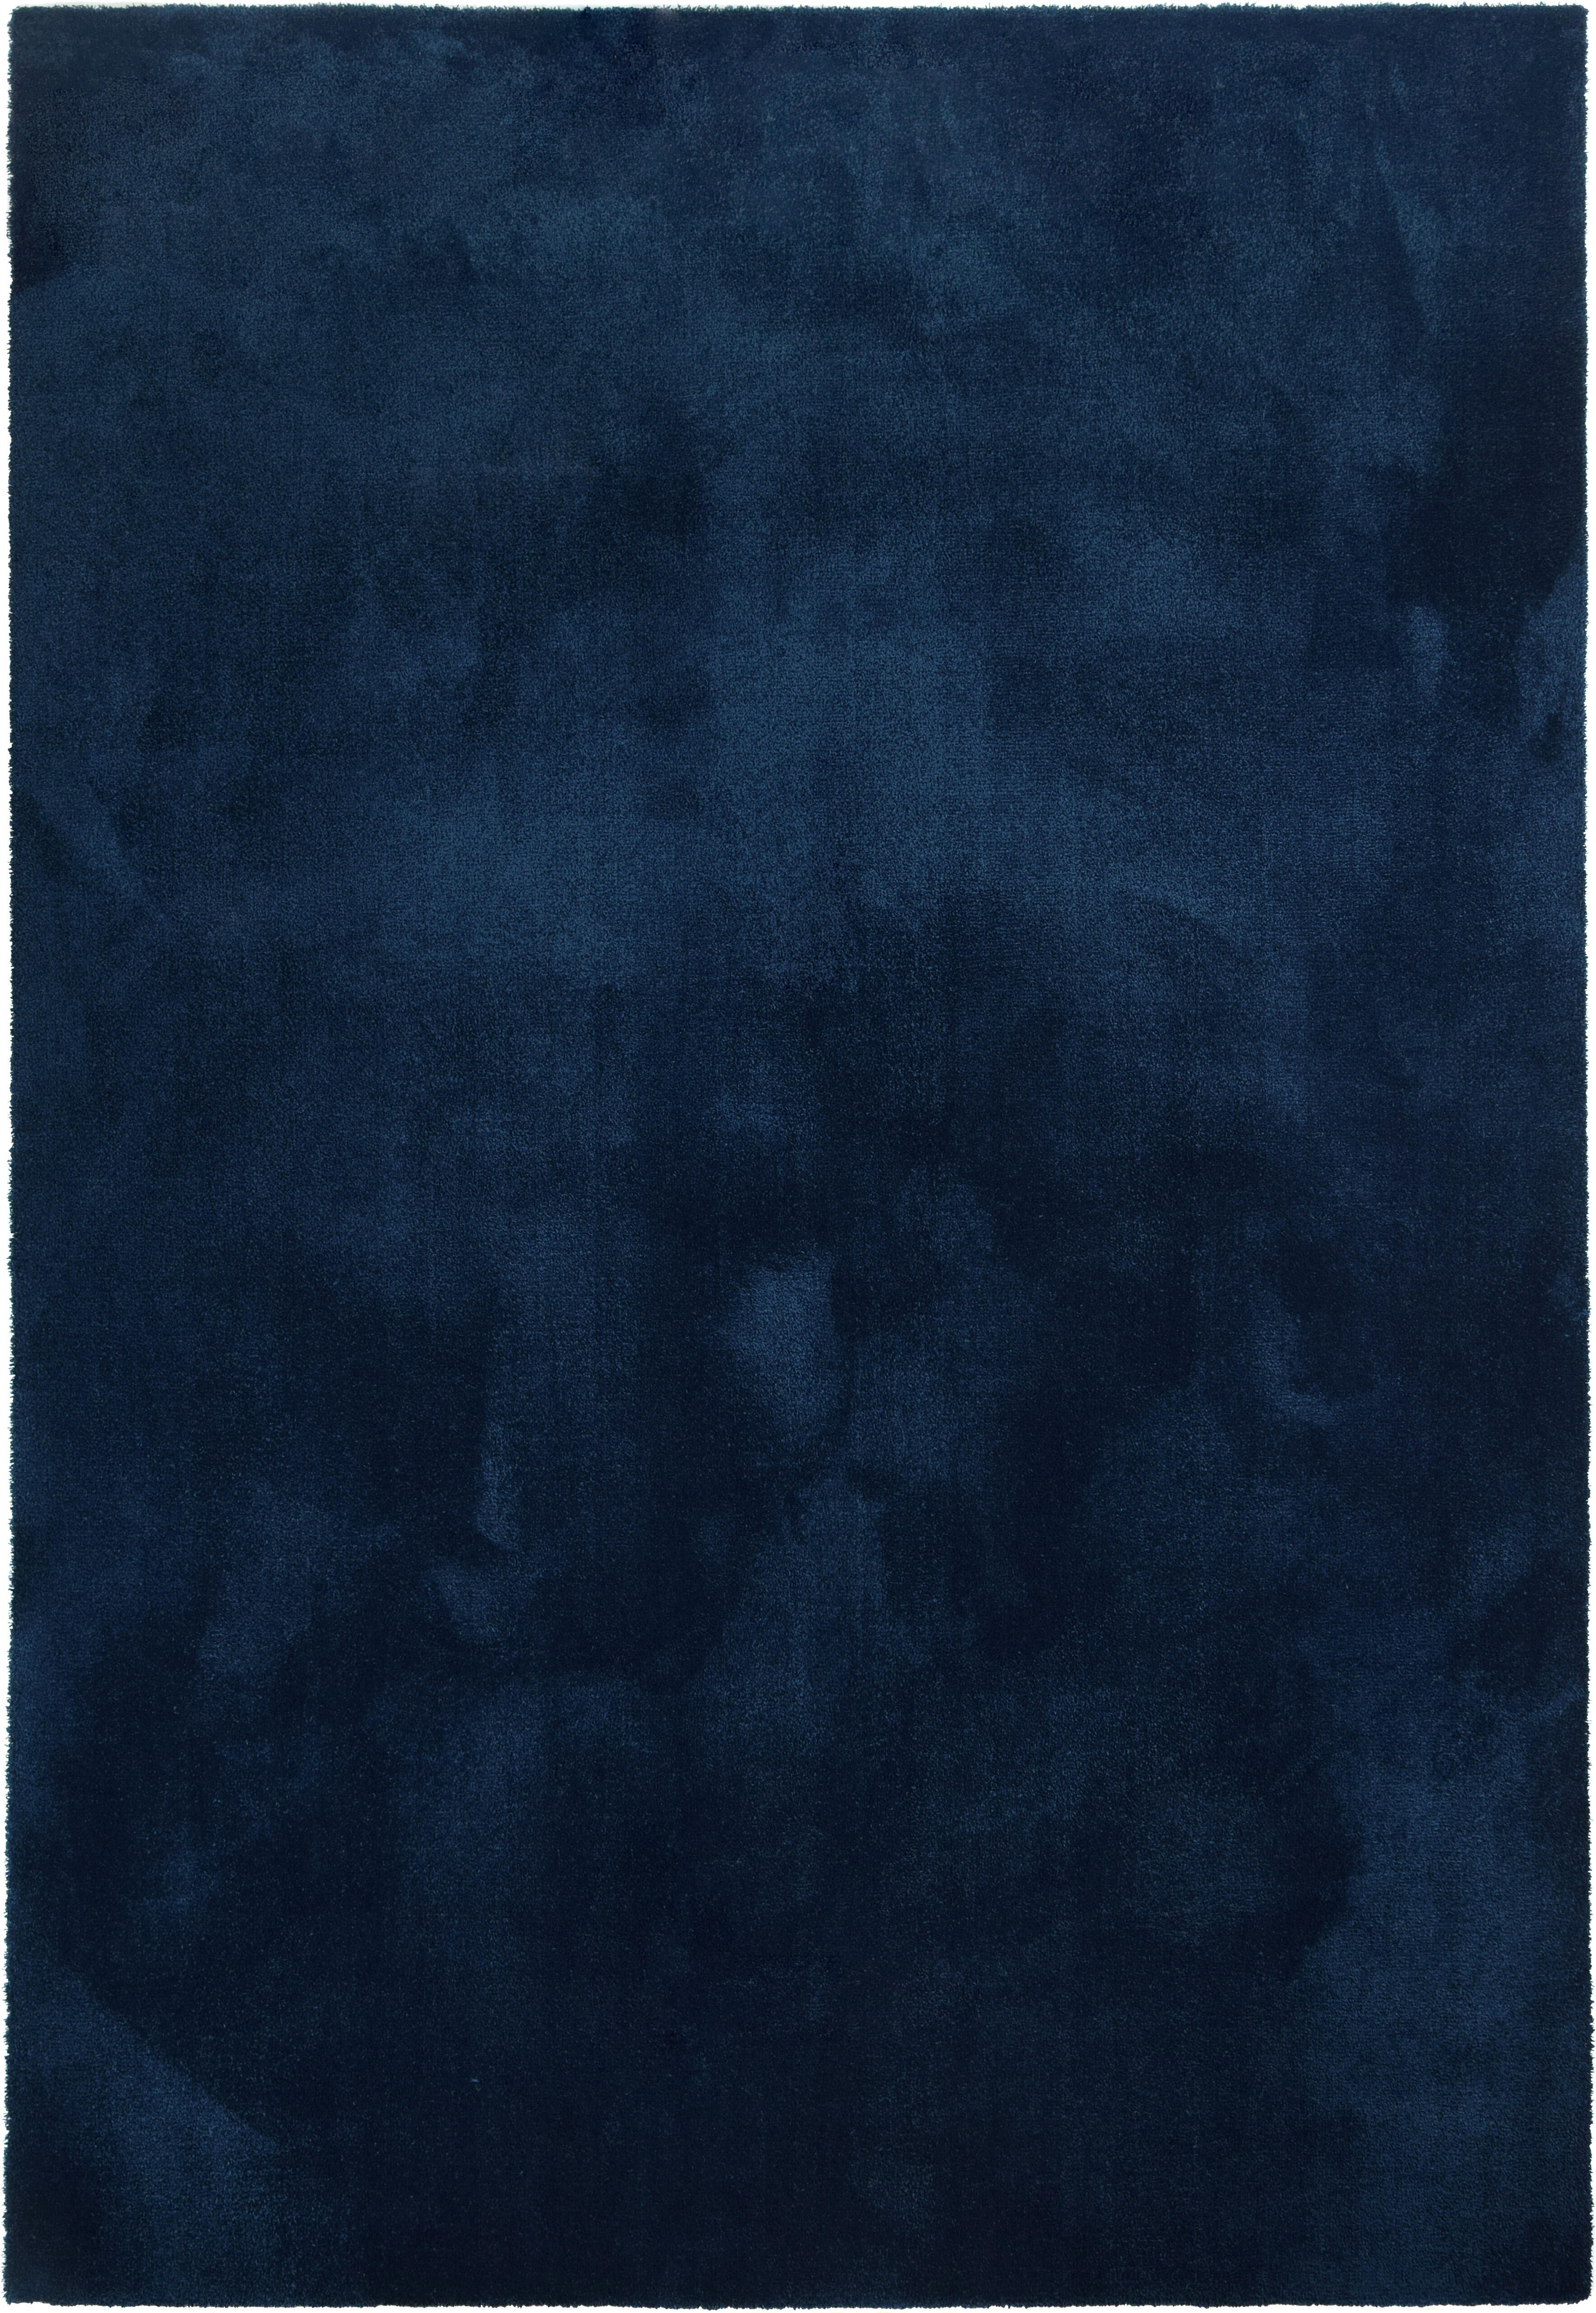 Alfombra poliamida touch azul oscuro 200x290cm